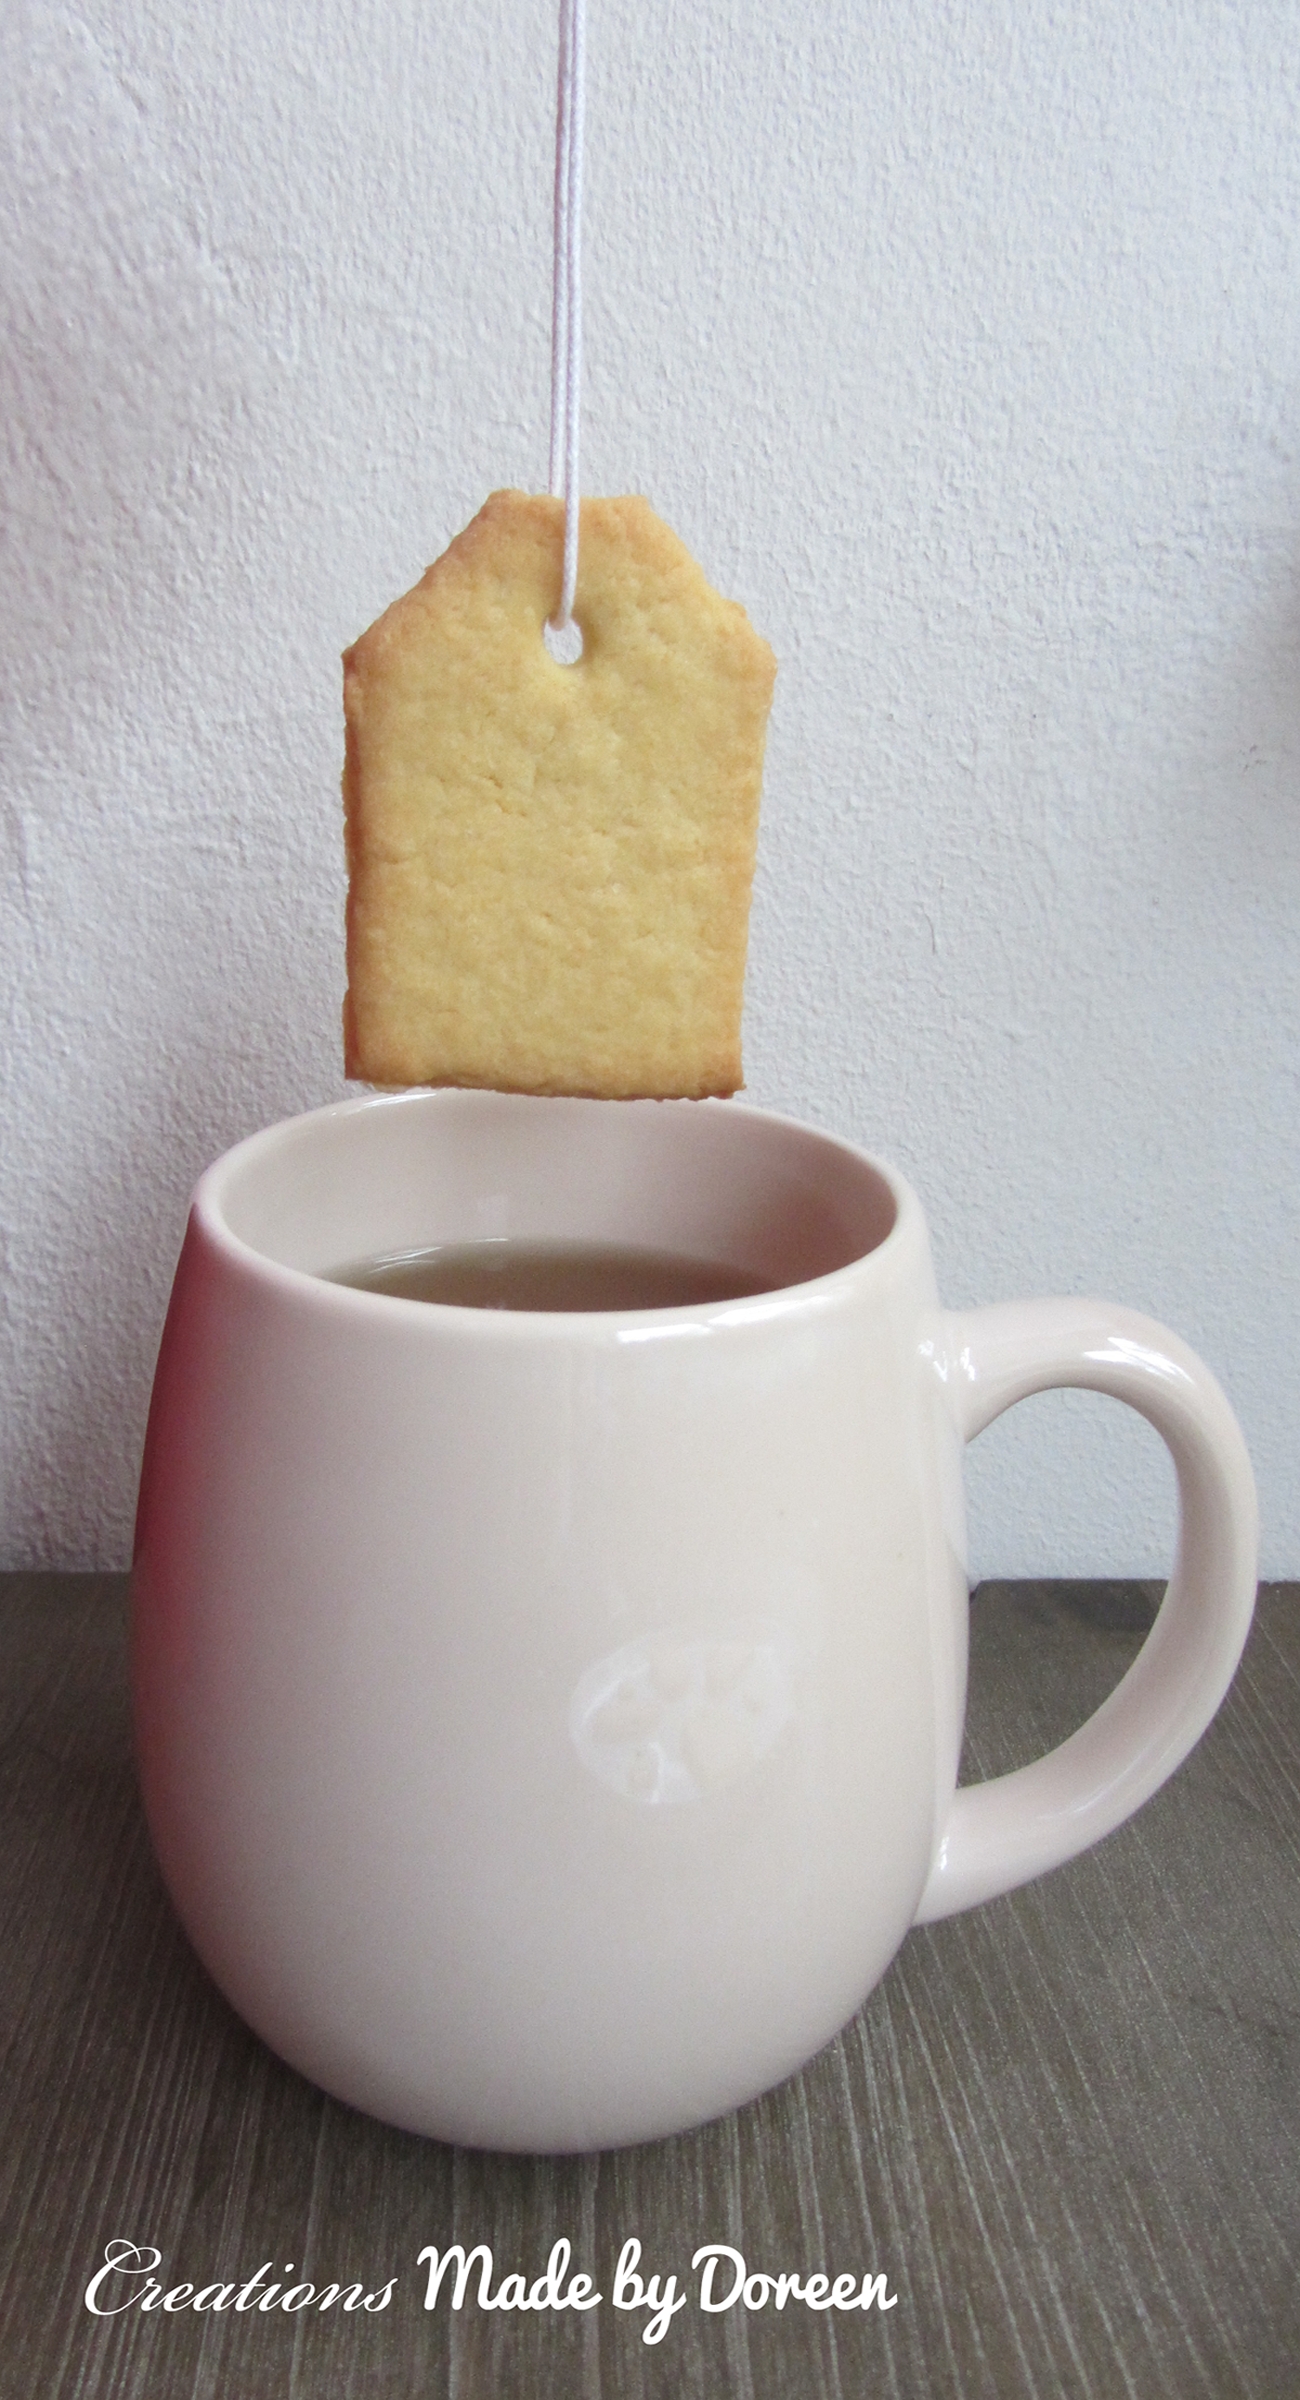 It's teatime! My loved Teabag-Cookies! #Kekse #Plätzchen #Cookies #Herbstbacken